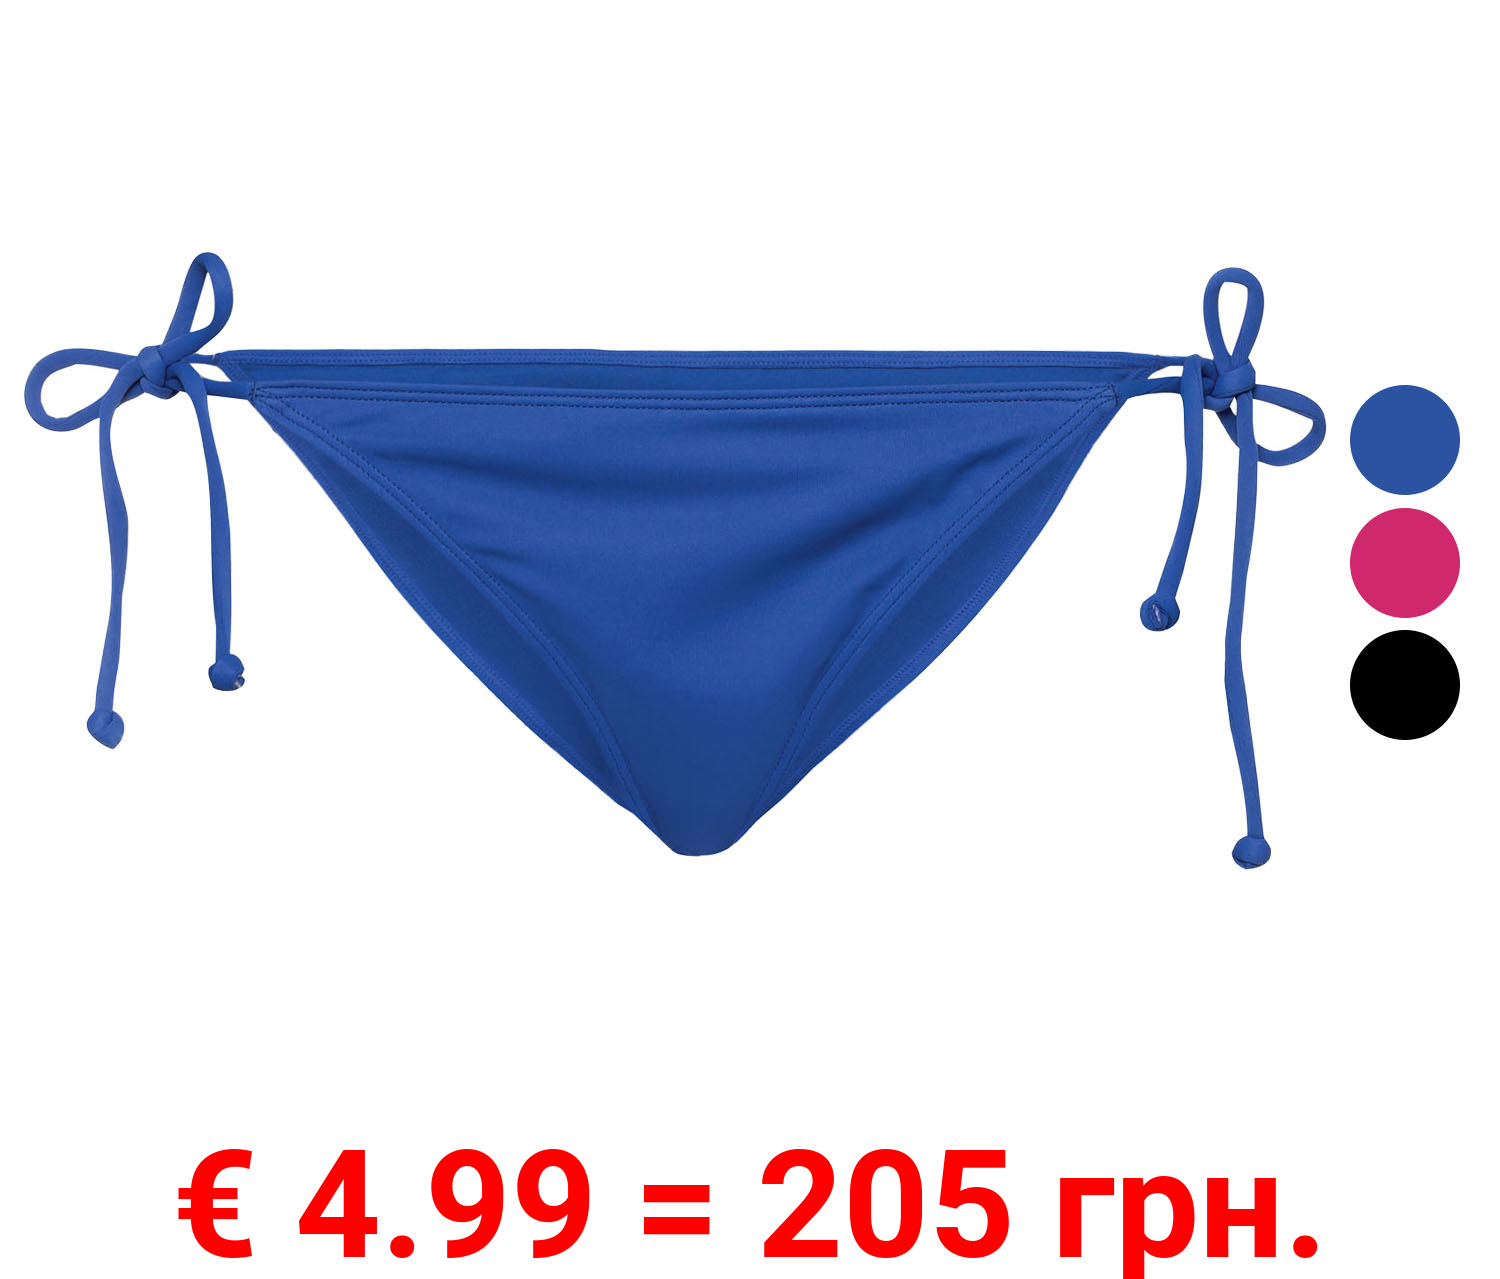 esmara® Damen Bikini Unterteil Minislip, mit seitlichen Bindebändern